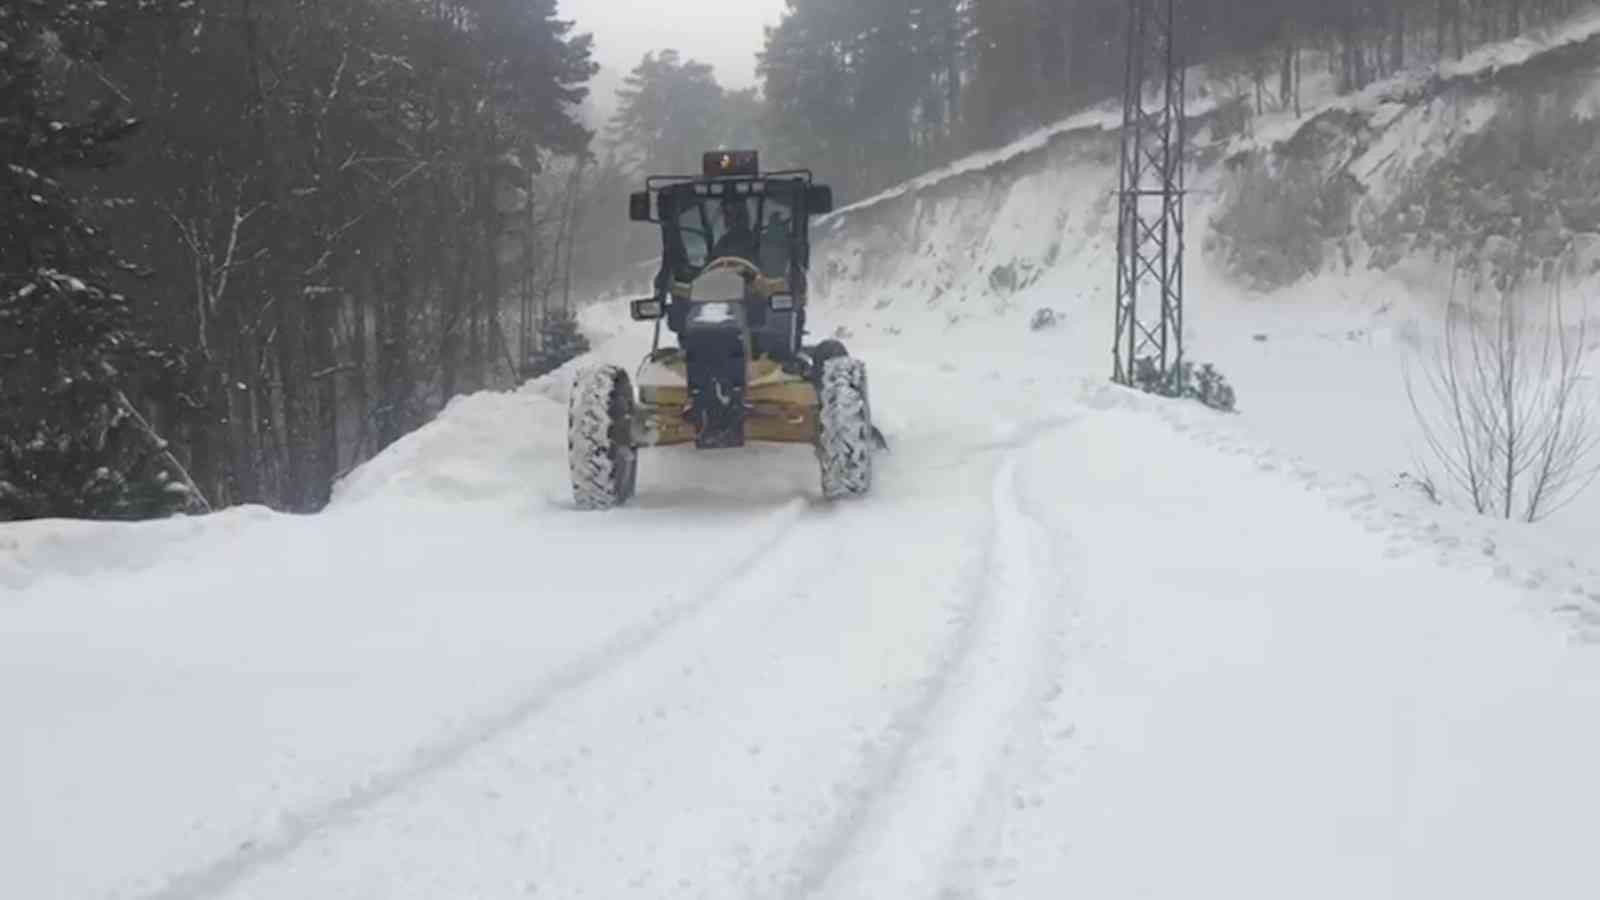 Kütahya’da karla mücadele çalışmaları #kutahya